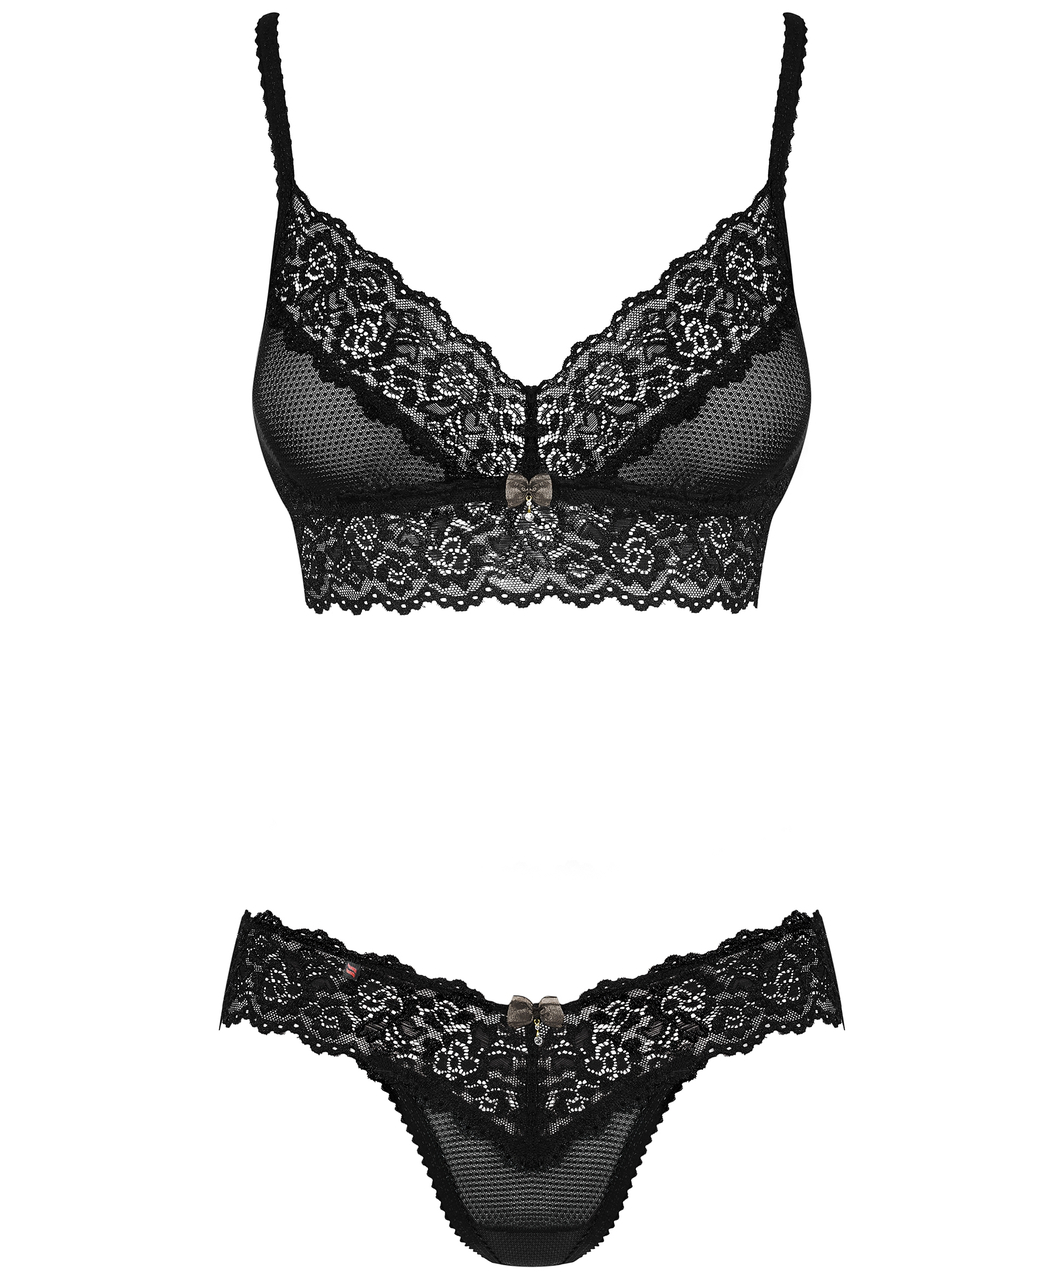 Obsessive black lace two-piece lingerie set